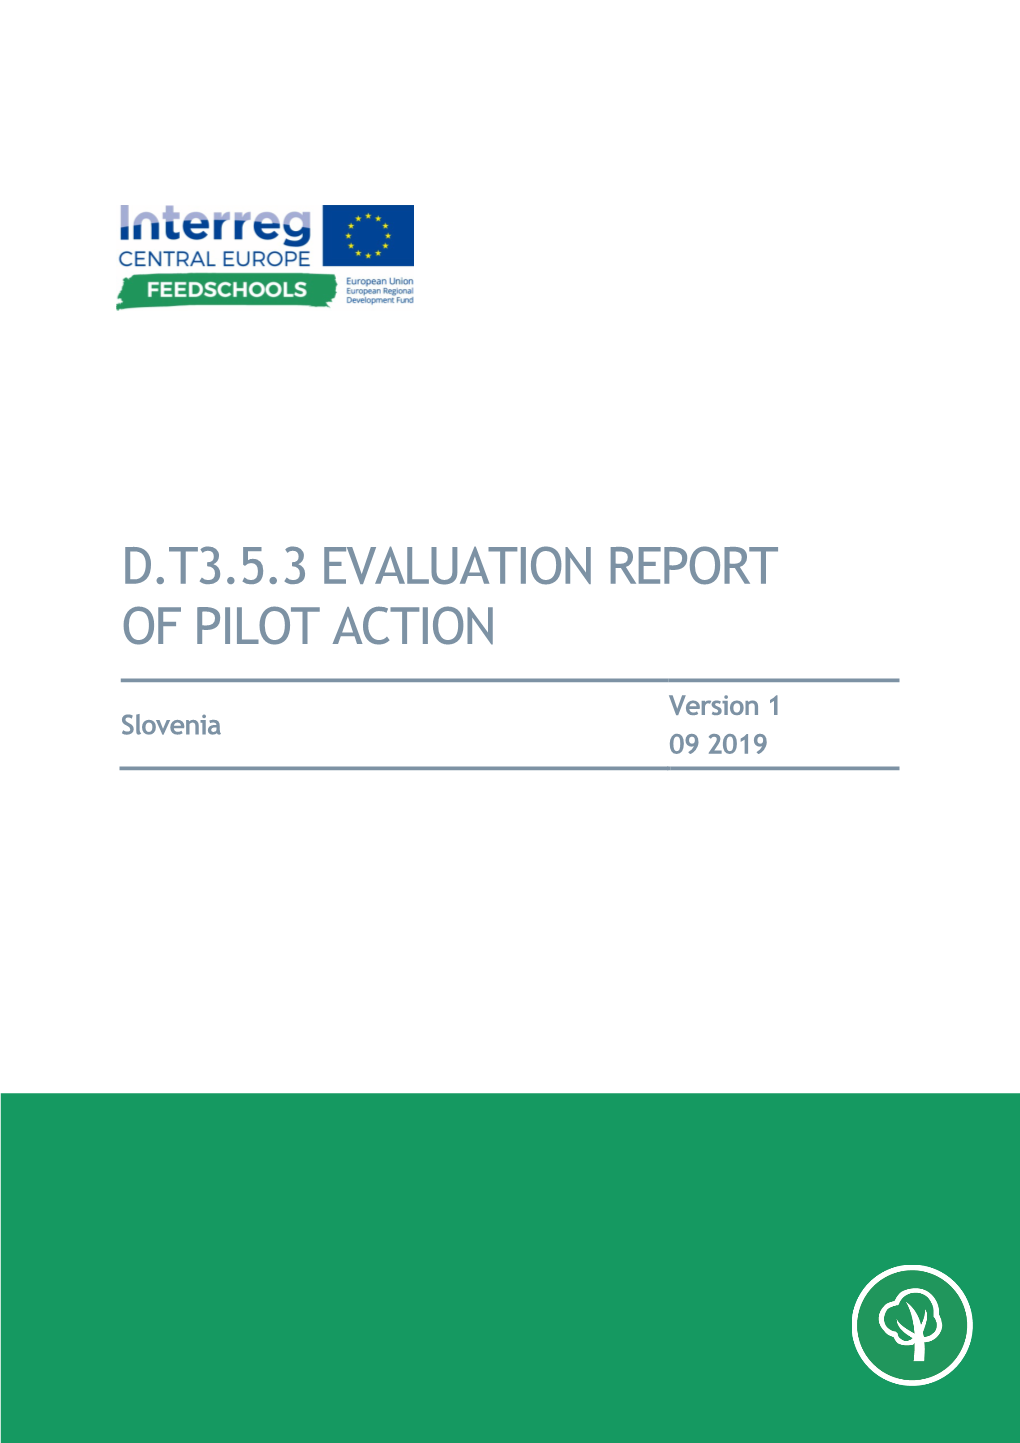 D.T3.5.3 Evaluation Report of Pilot Action